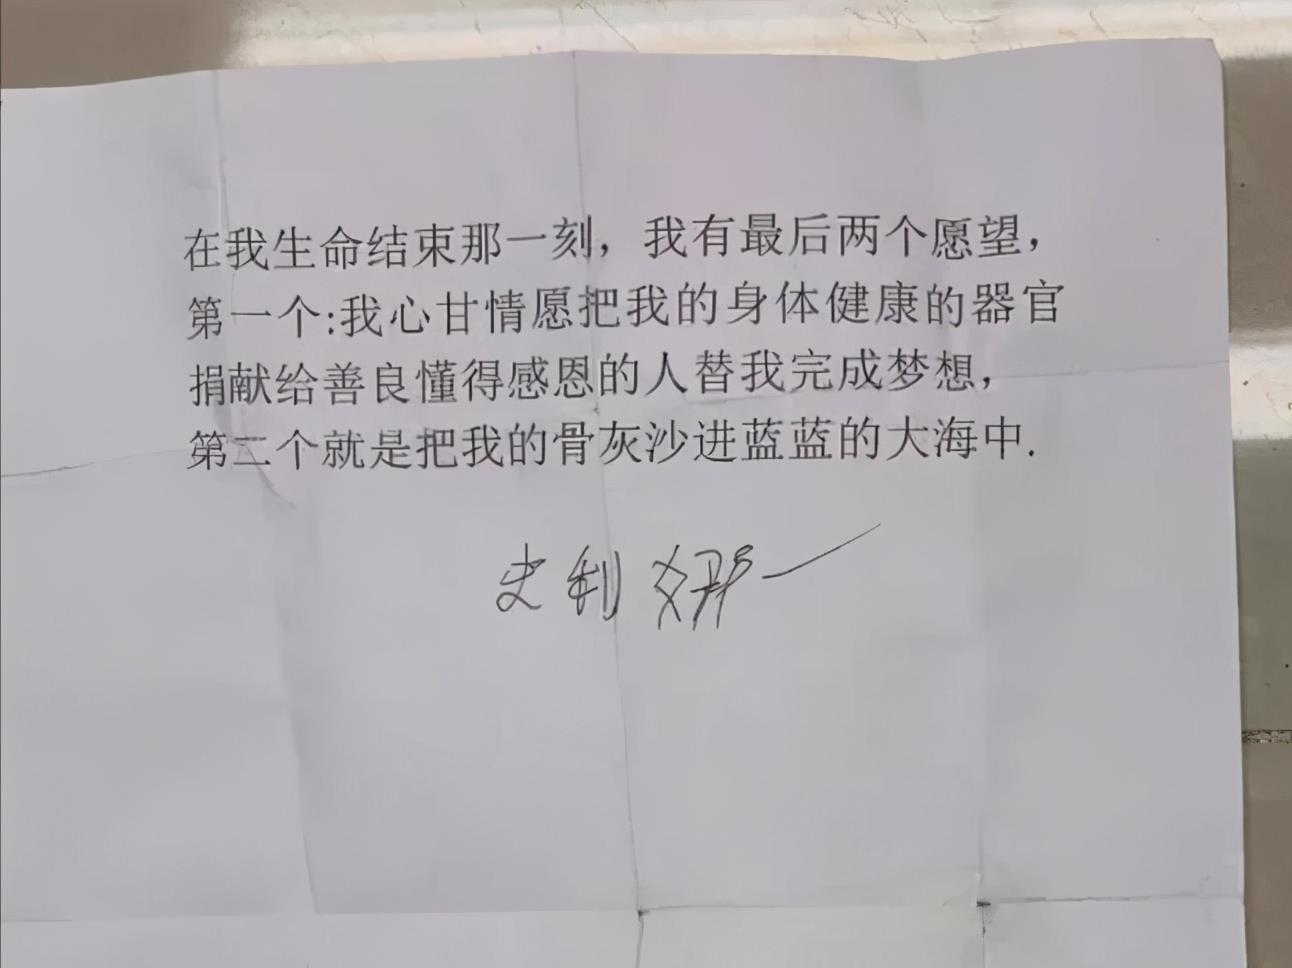 三亚红衣女子坠楼细节披露:从陕西来三亚旅游,遗书并非女子手写